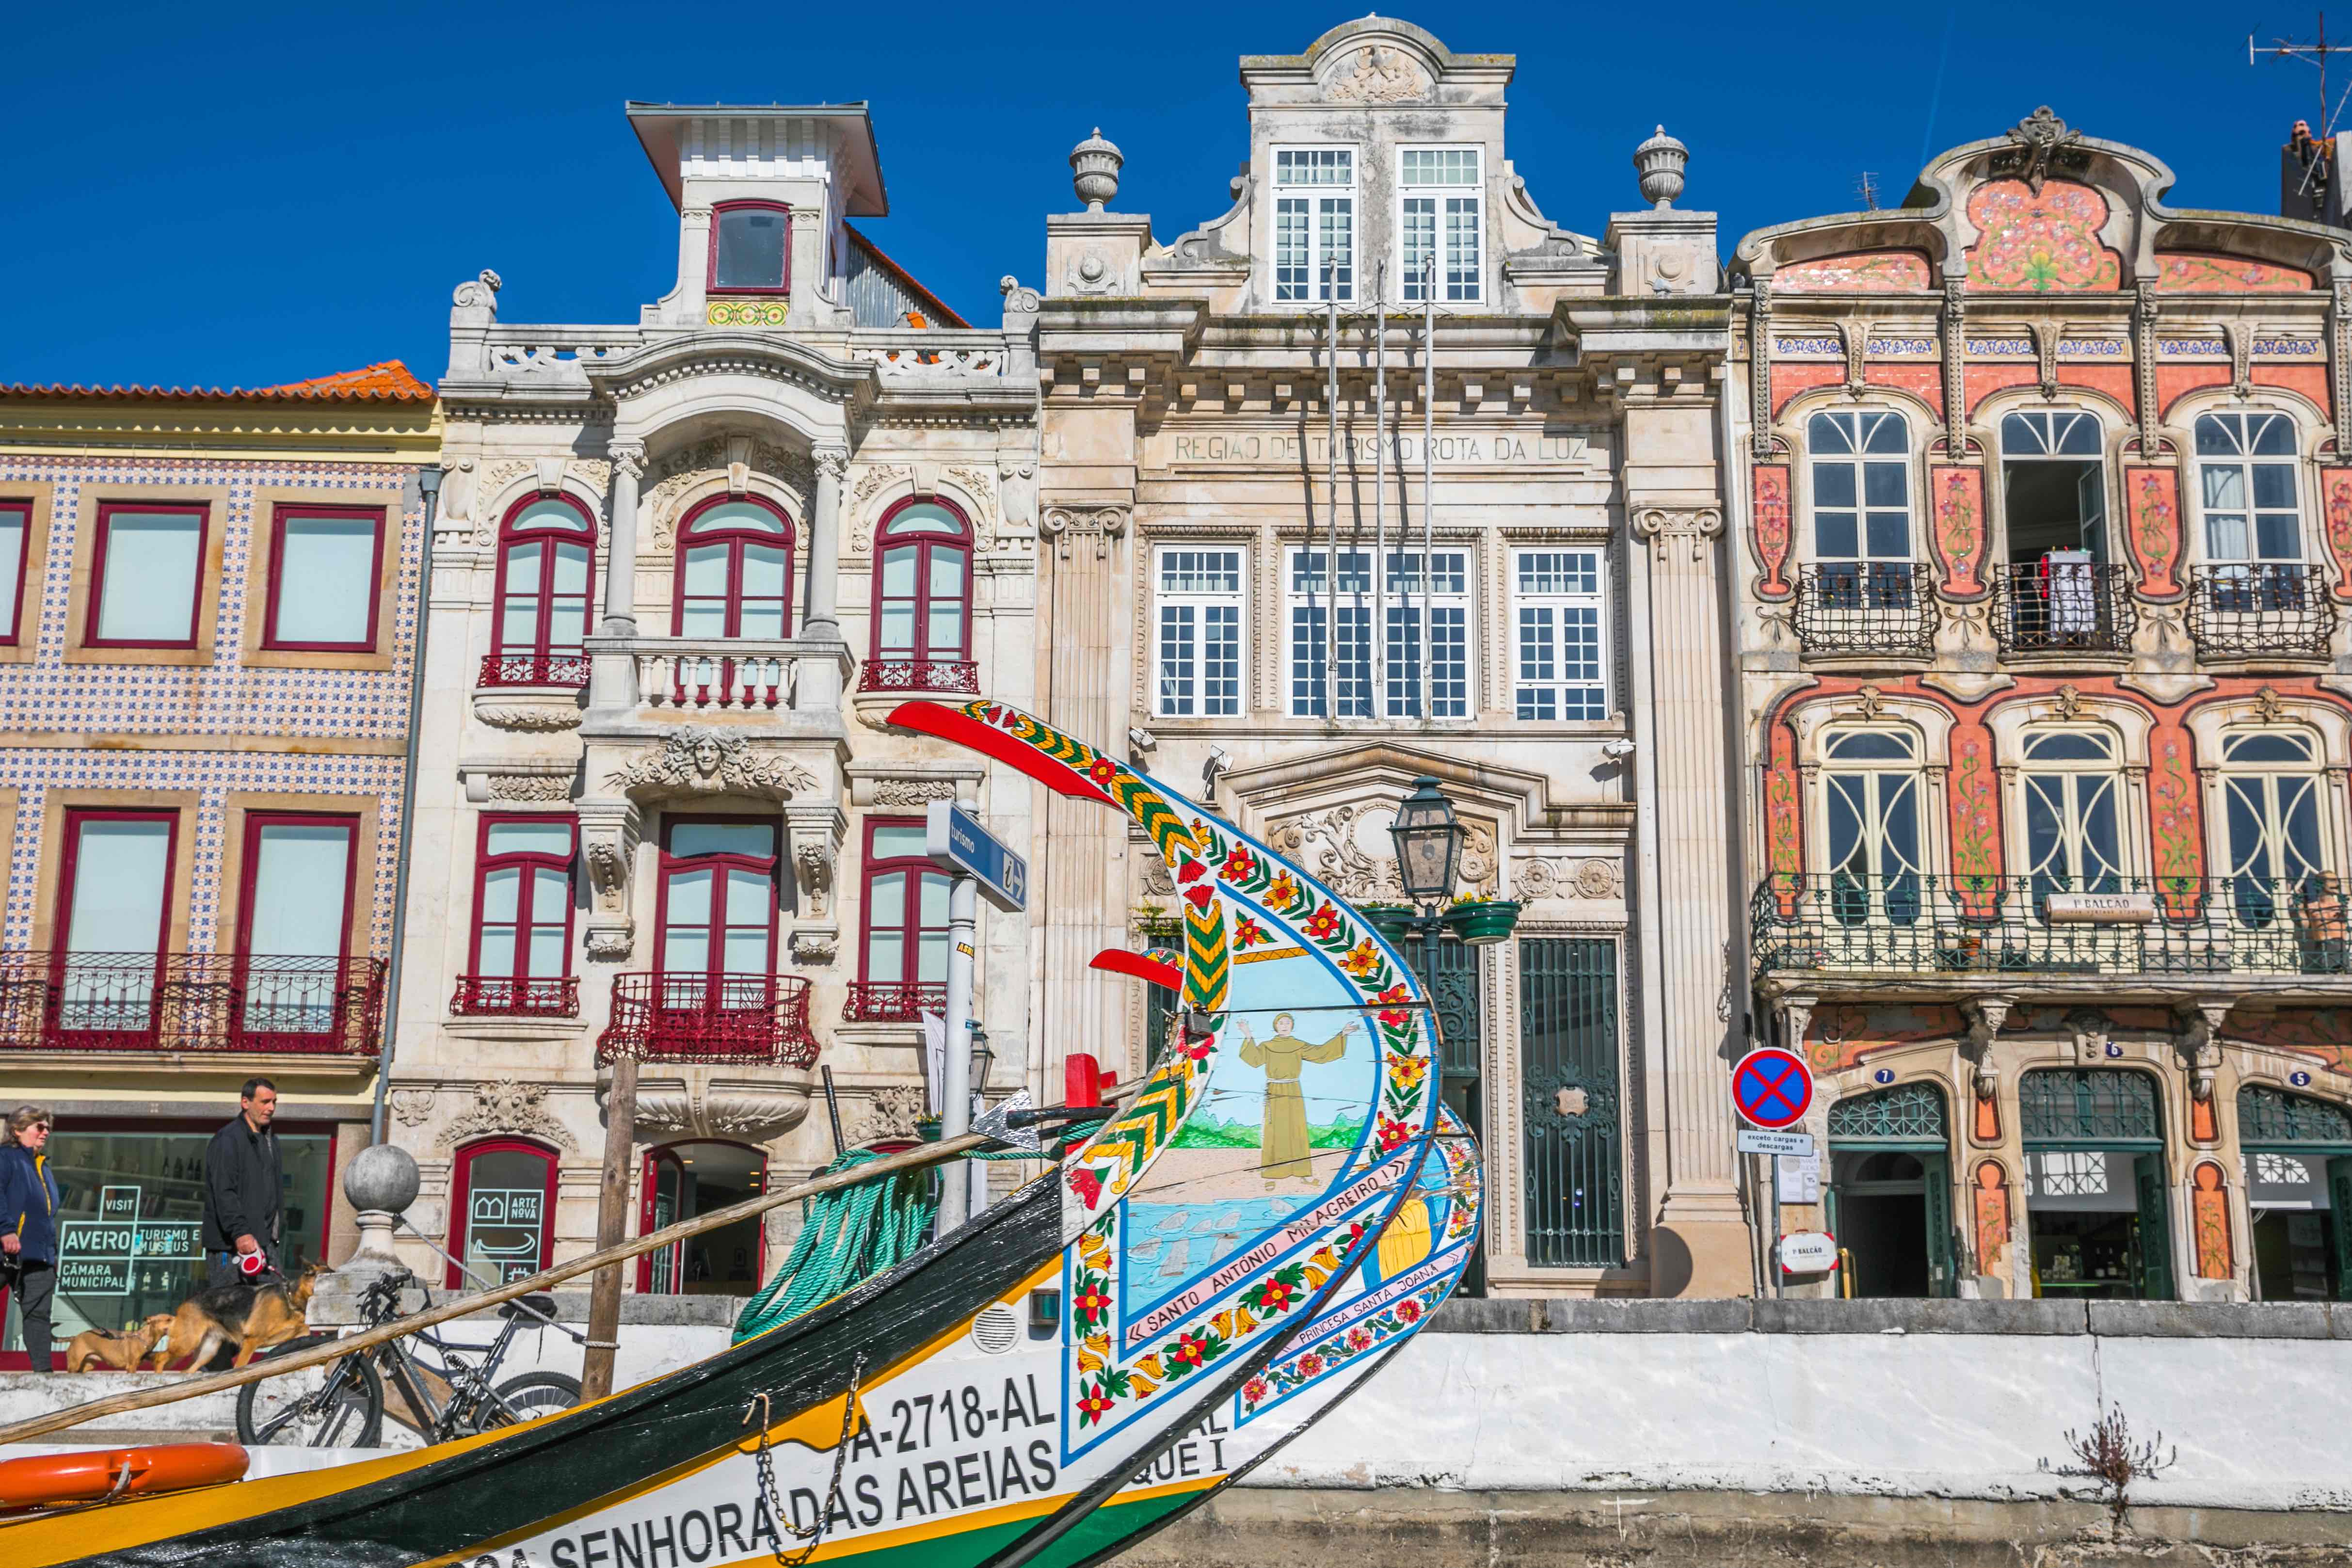 葡萄牙辛特拉小镇海边风景6K壁纸_4K风景图片高清壁纸_墨鱼部落格